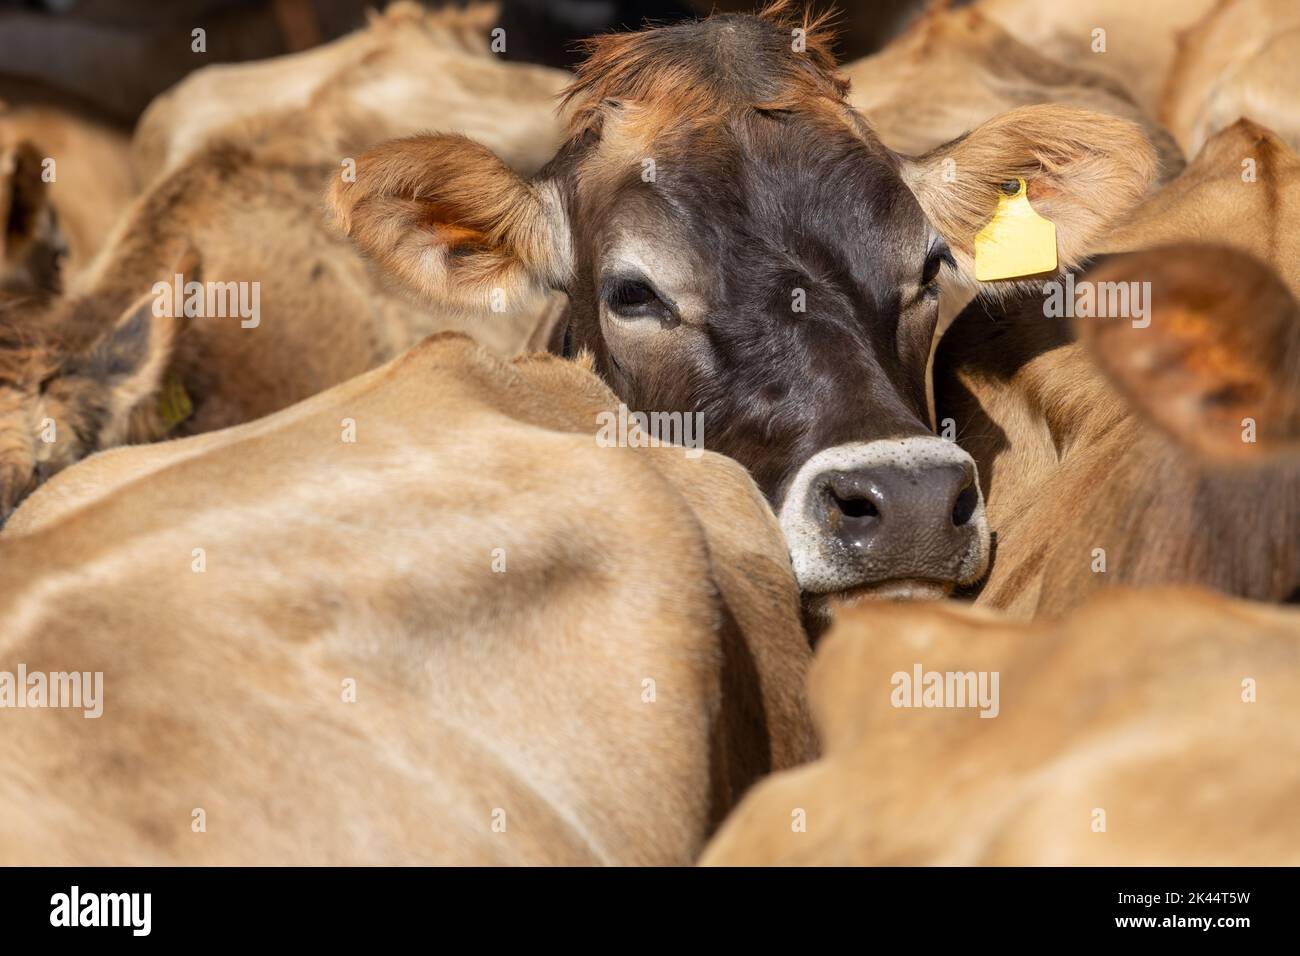 Una vaca jersey que descansa su cabeza en la parte posterior de otra vaca Foto de stock